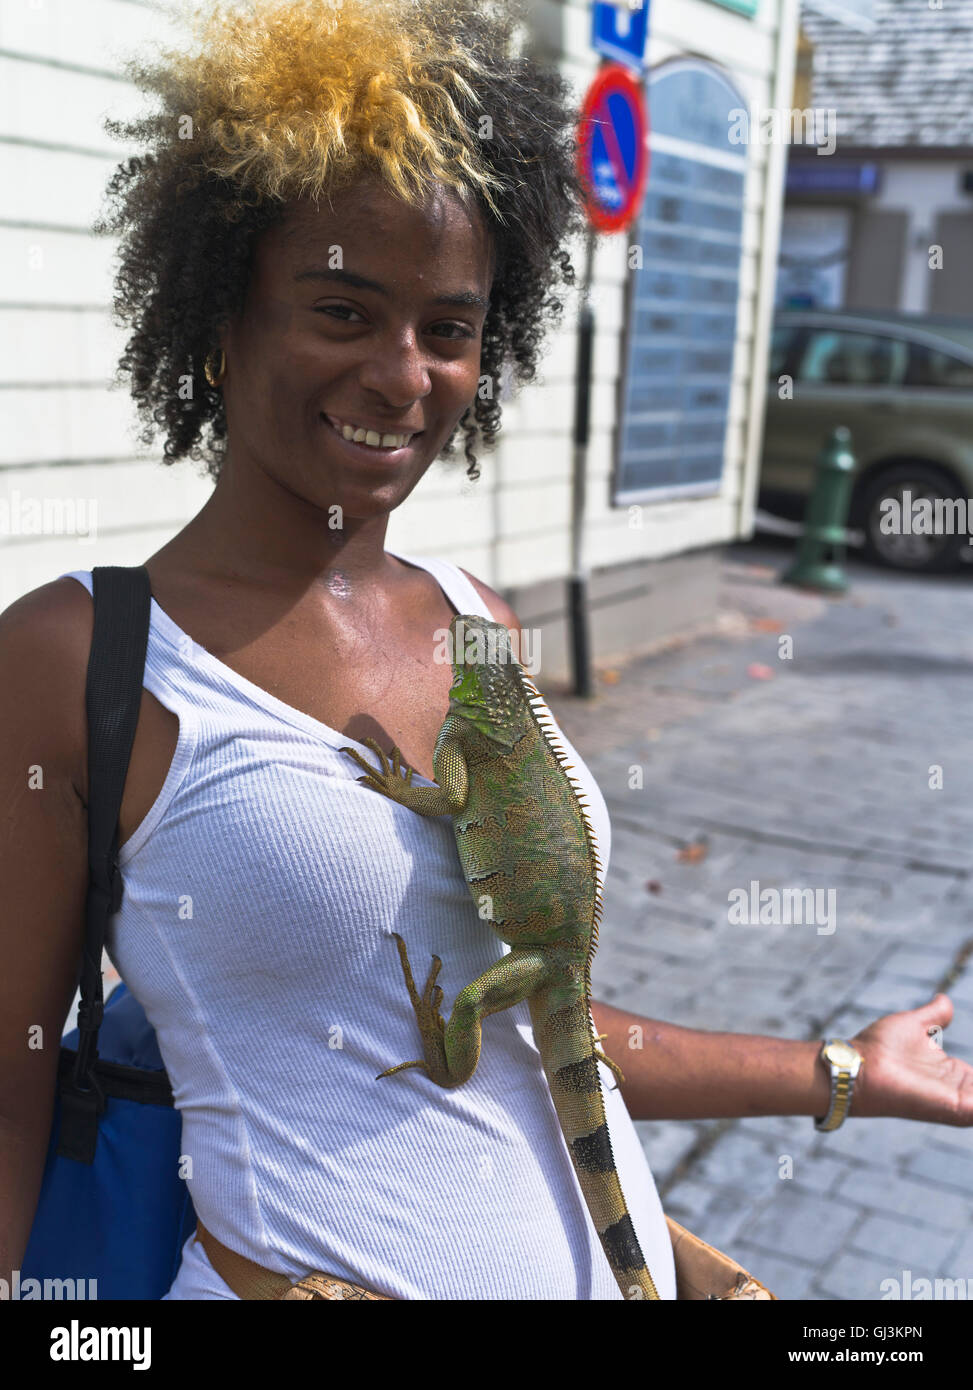 dh Philipsburg Antilles st MAARTEN CARIBBEAN Girl with iguana lézard pour animaux de compagnie accroché à des personnes animaux inhabituels Banque D'Images